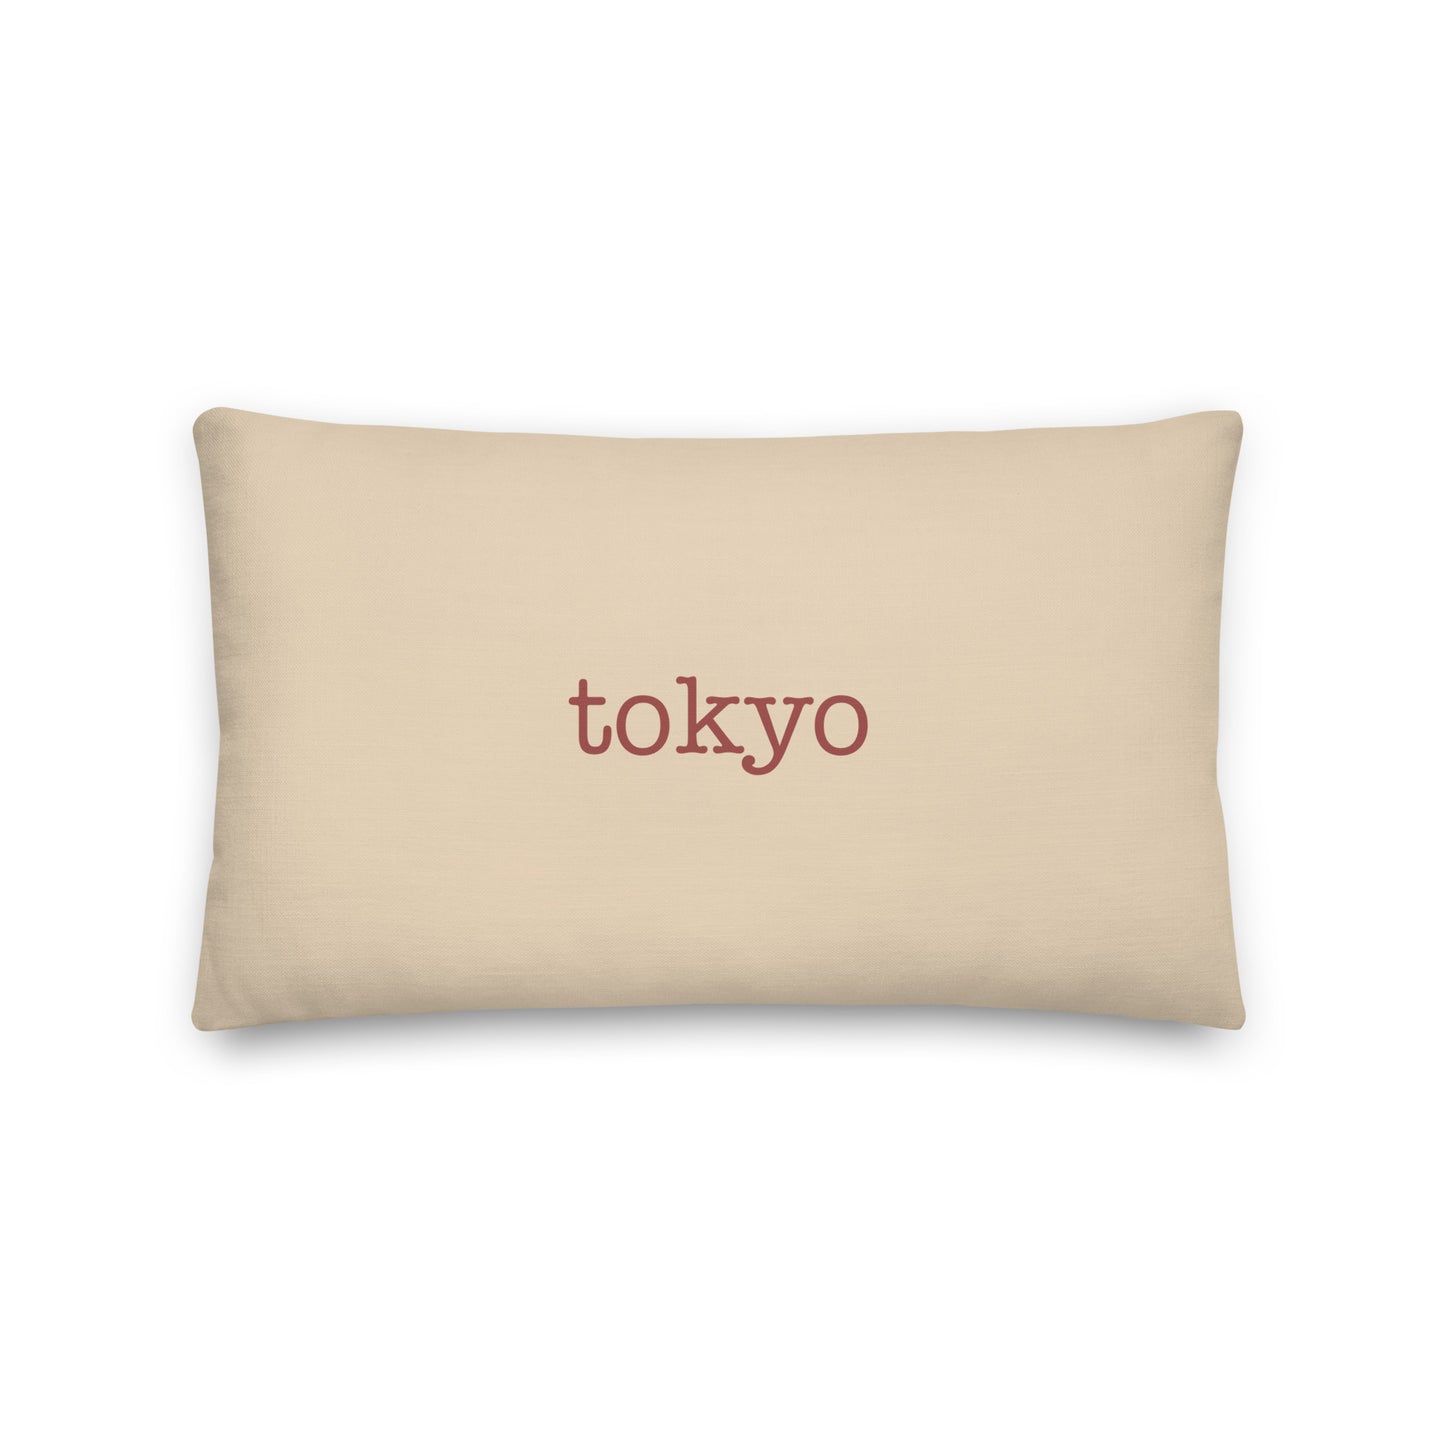 Typewriter Pillow - Terra Cotta • HND Tokyo • YHM Designs - Image 01